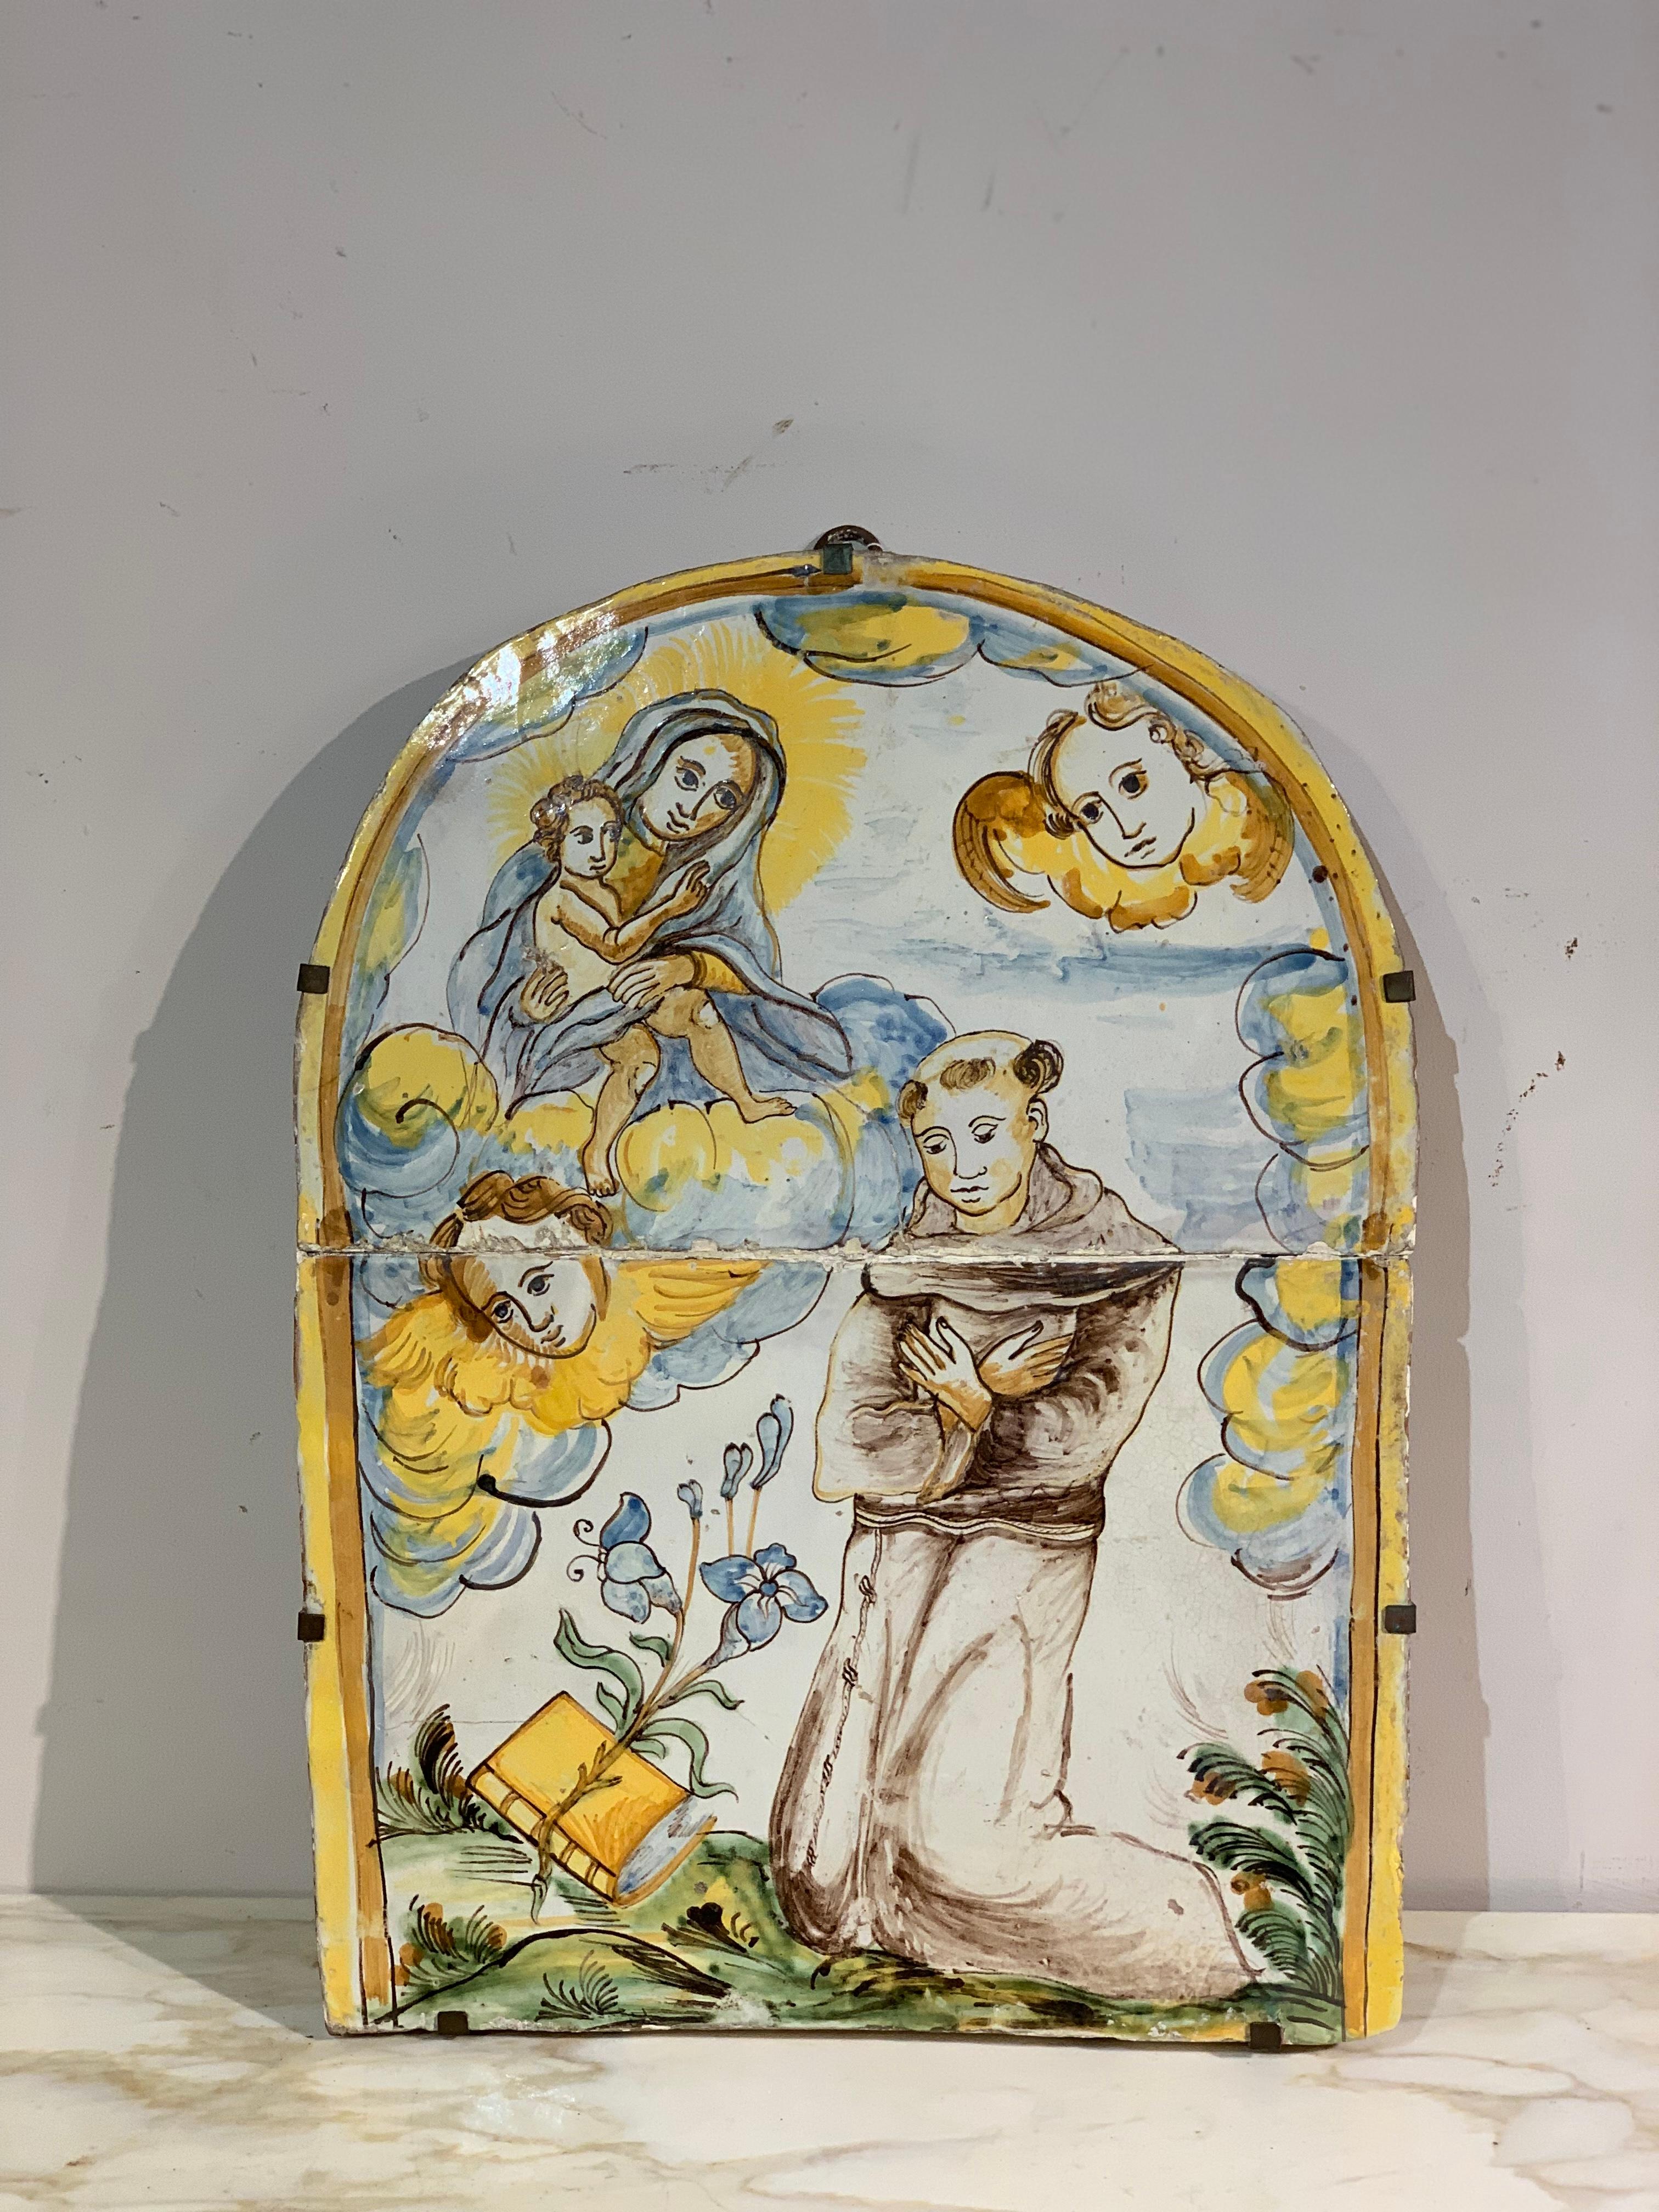 Belle plaque de tabernacle en majolique polychrome, représentant la Vierge à l'enfant et Saint Antoine de Padoue. Le dessin et les couleurs rappellent les premières majoliques polychromes des célèbres fours de Montelupo Fiorentino. Le cadre est